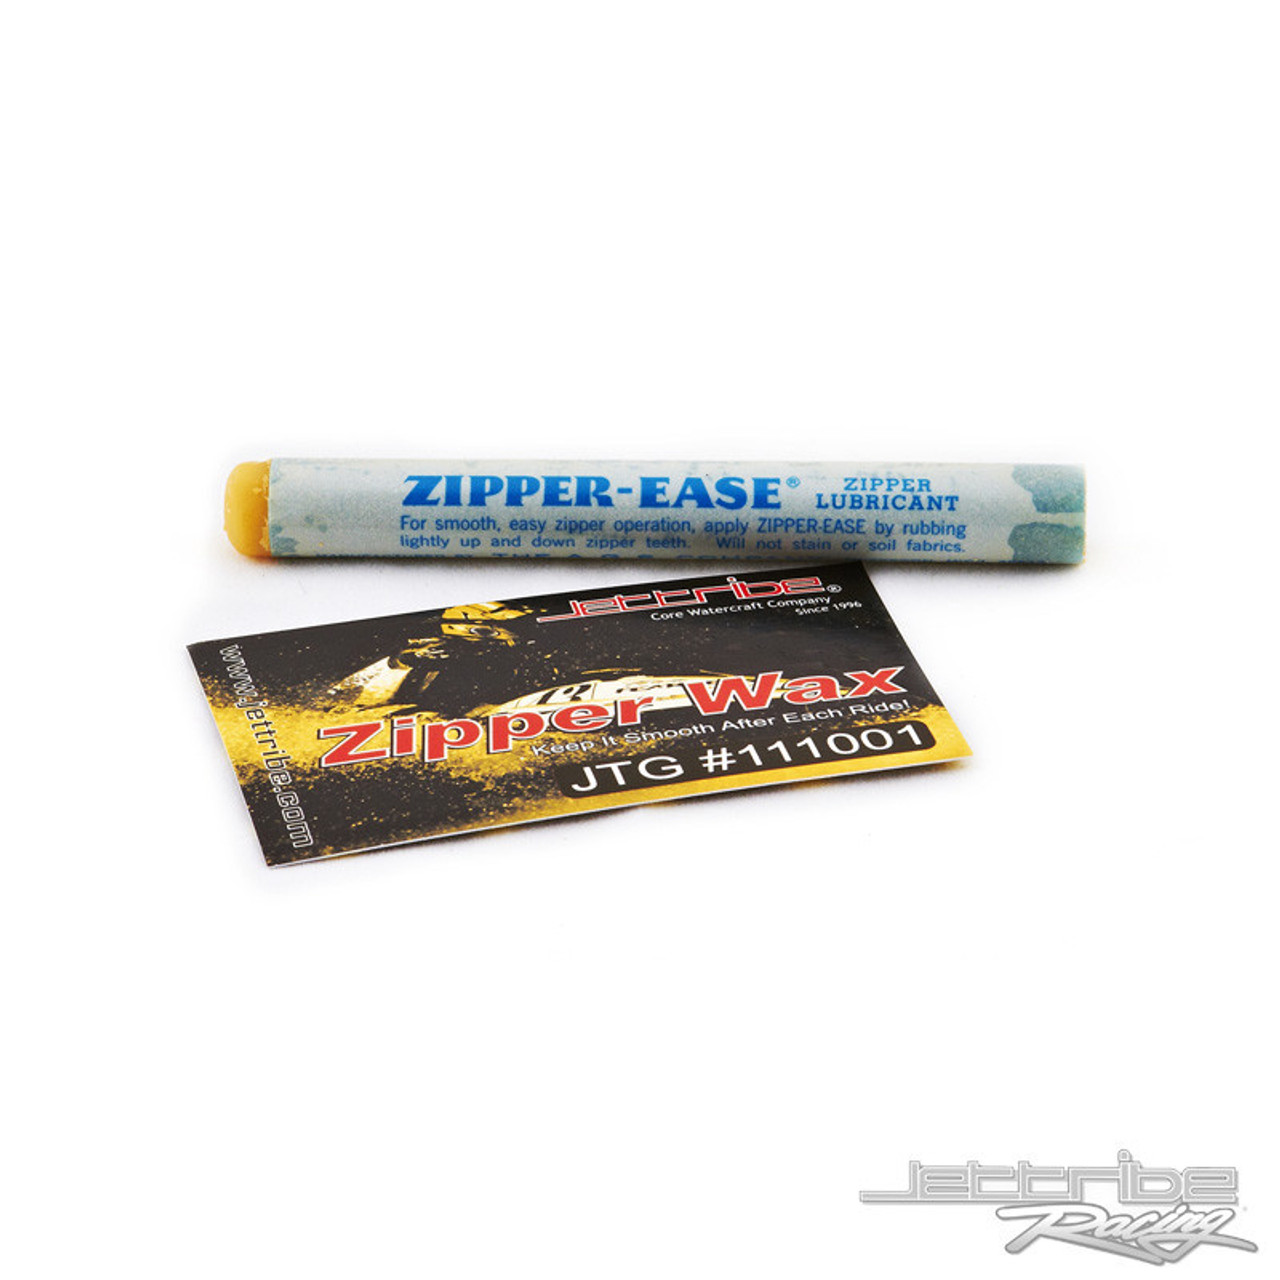 Zipper Wax PWC Jetski Ride & Race Jet Ski Accessories